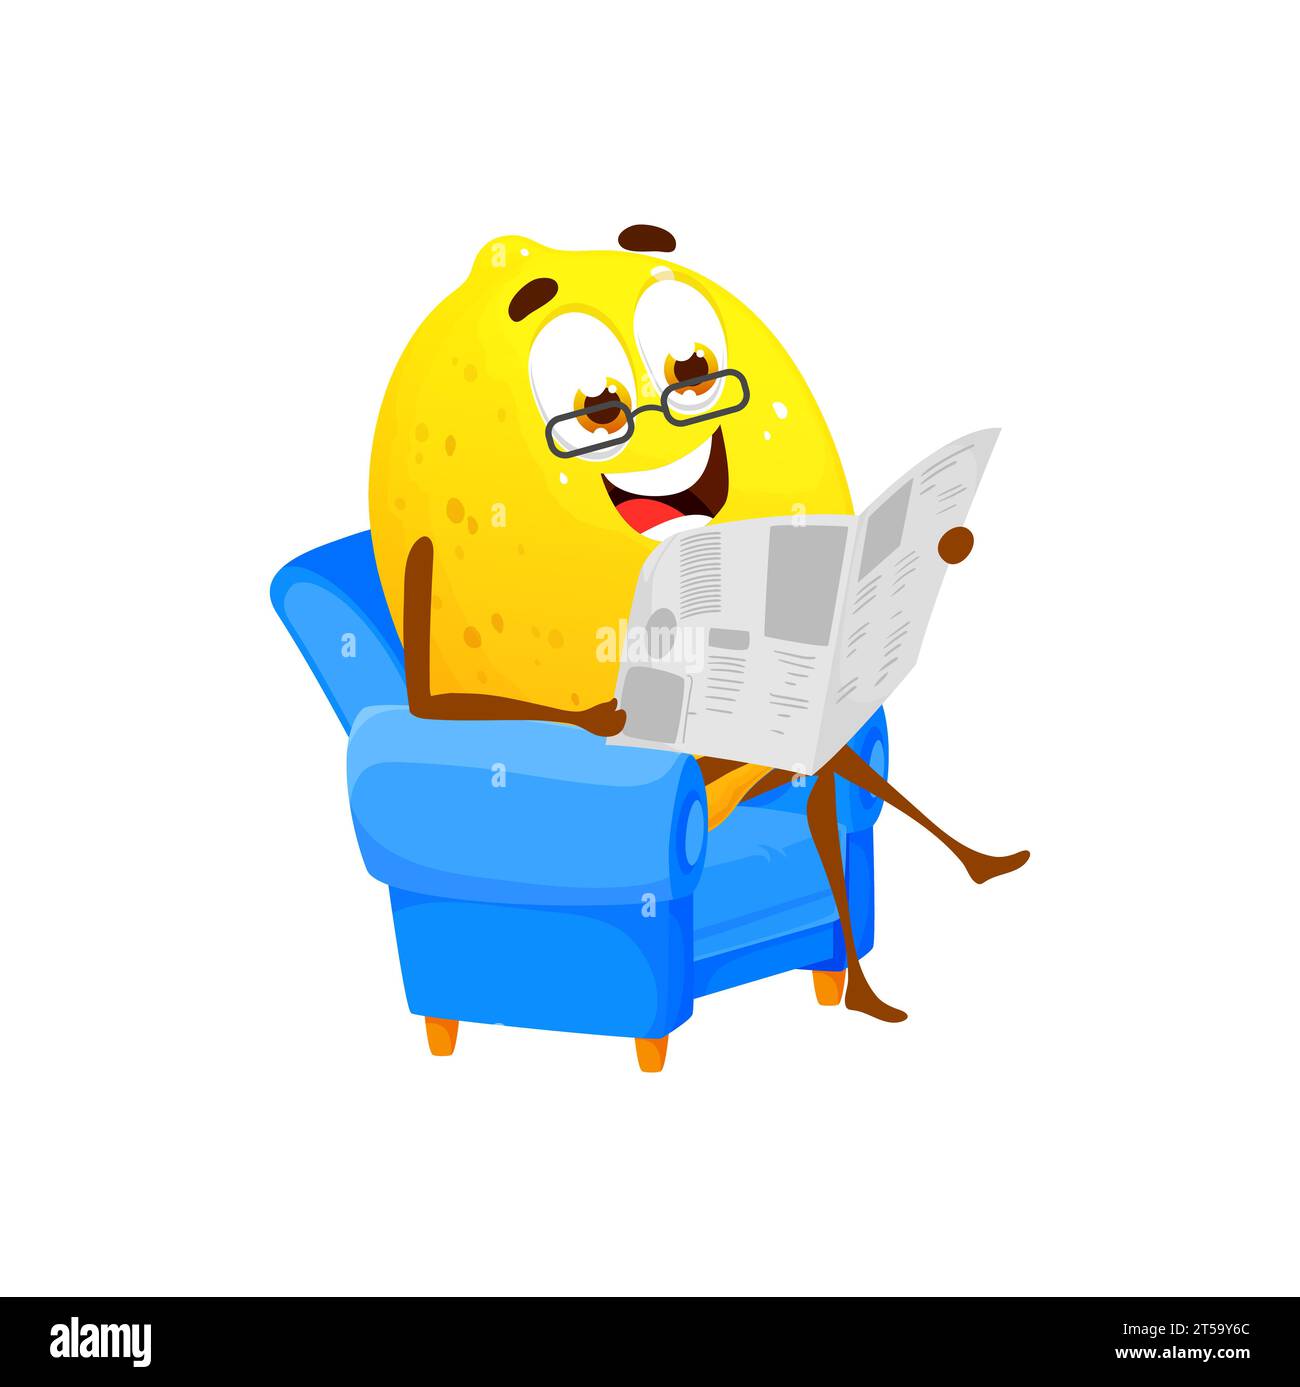 Zitronen-Zeichentrickfigur, die Zeitung liest und in einem bequemen Sessel sitzt. Isolierte Vektoren entspannte Zitrusfrüchte tragen Brillen gemächlich lesen gedruckte Artikel und Nachrichtenpublikationen in den Pressemedien Stock Vektor